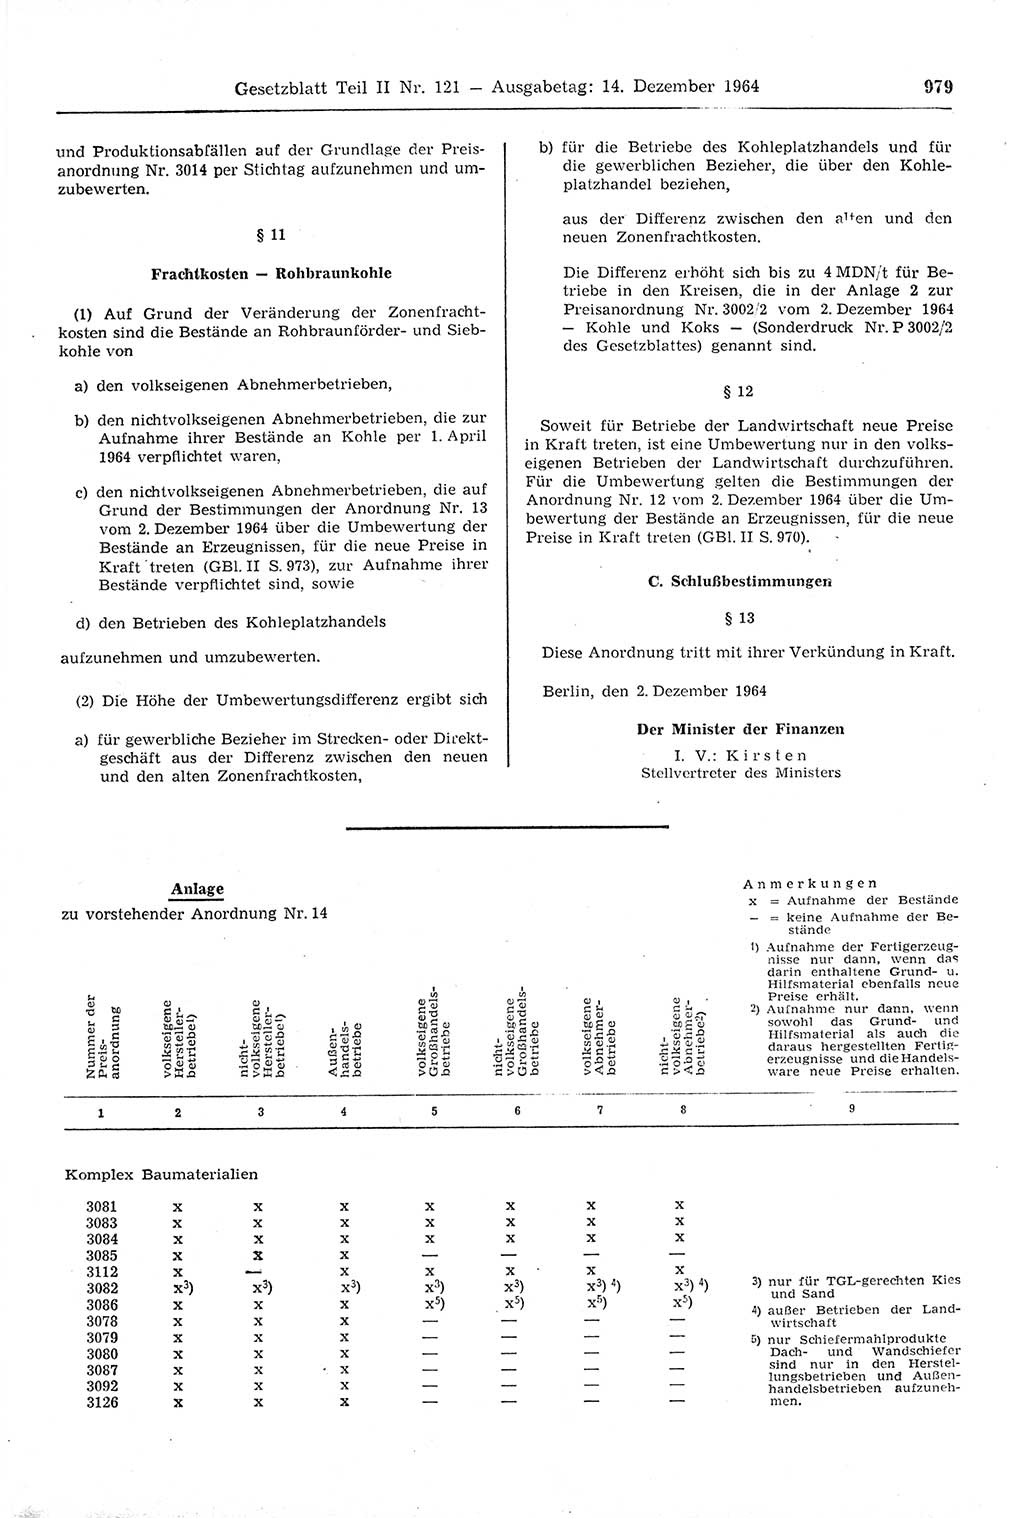 Gesetzblatt (GBl.) der Deutschen Demokratischen Republik (DDR) Teil ⅠⅠ 1964, Seite 979 (GBl. DDR ⅠⅠ 1964, S. 979)